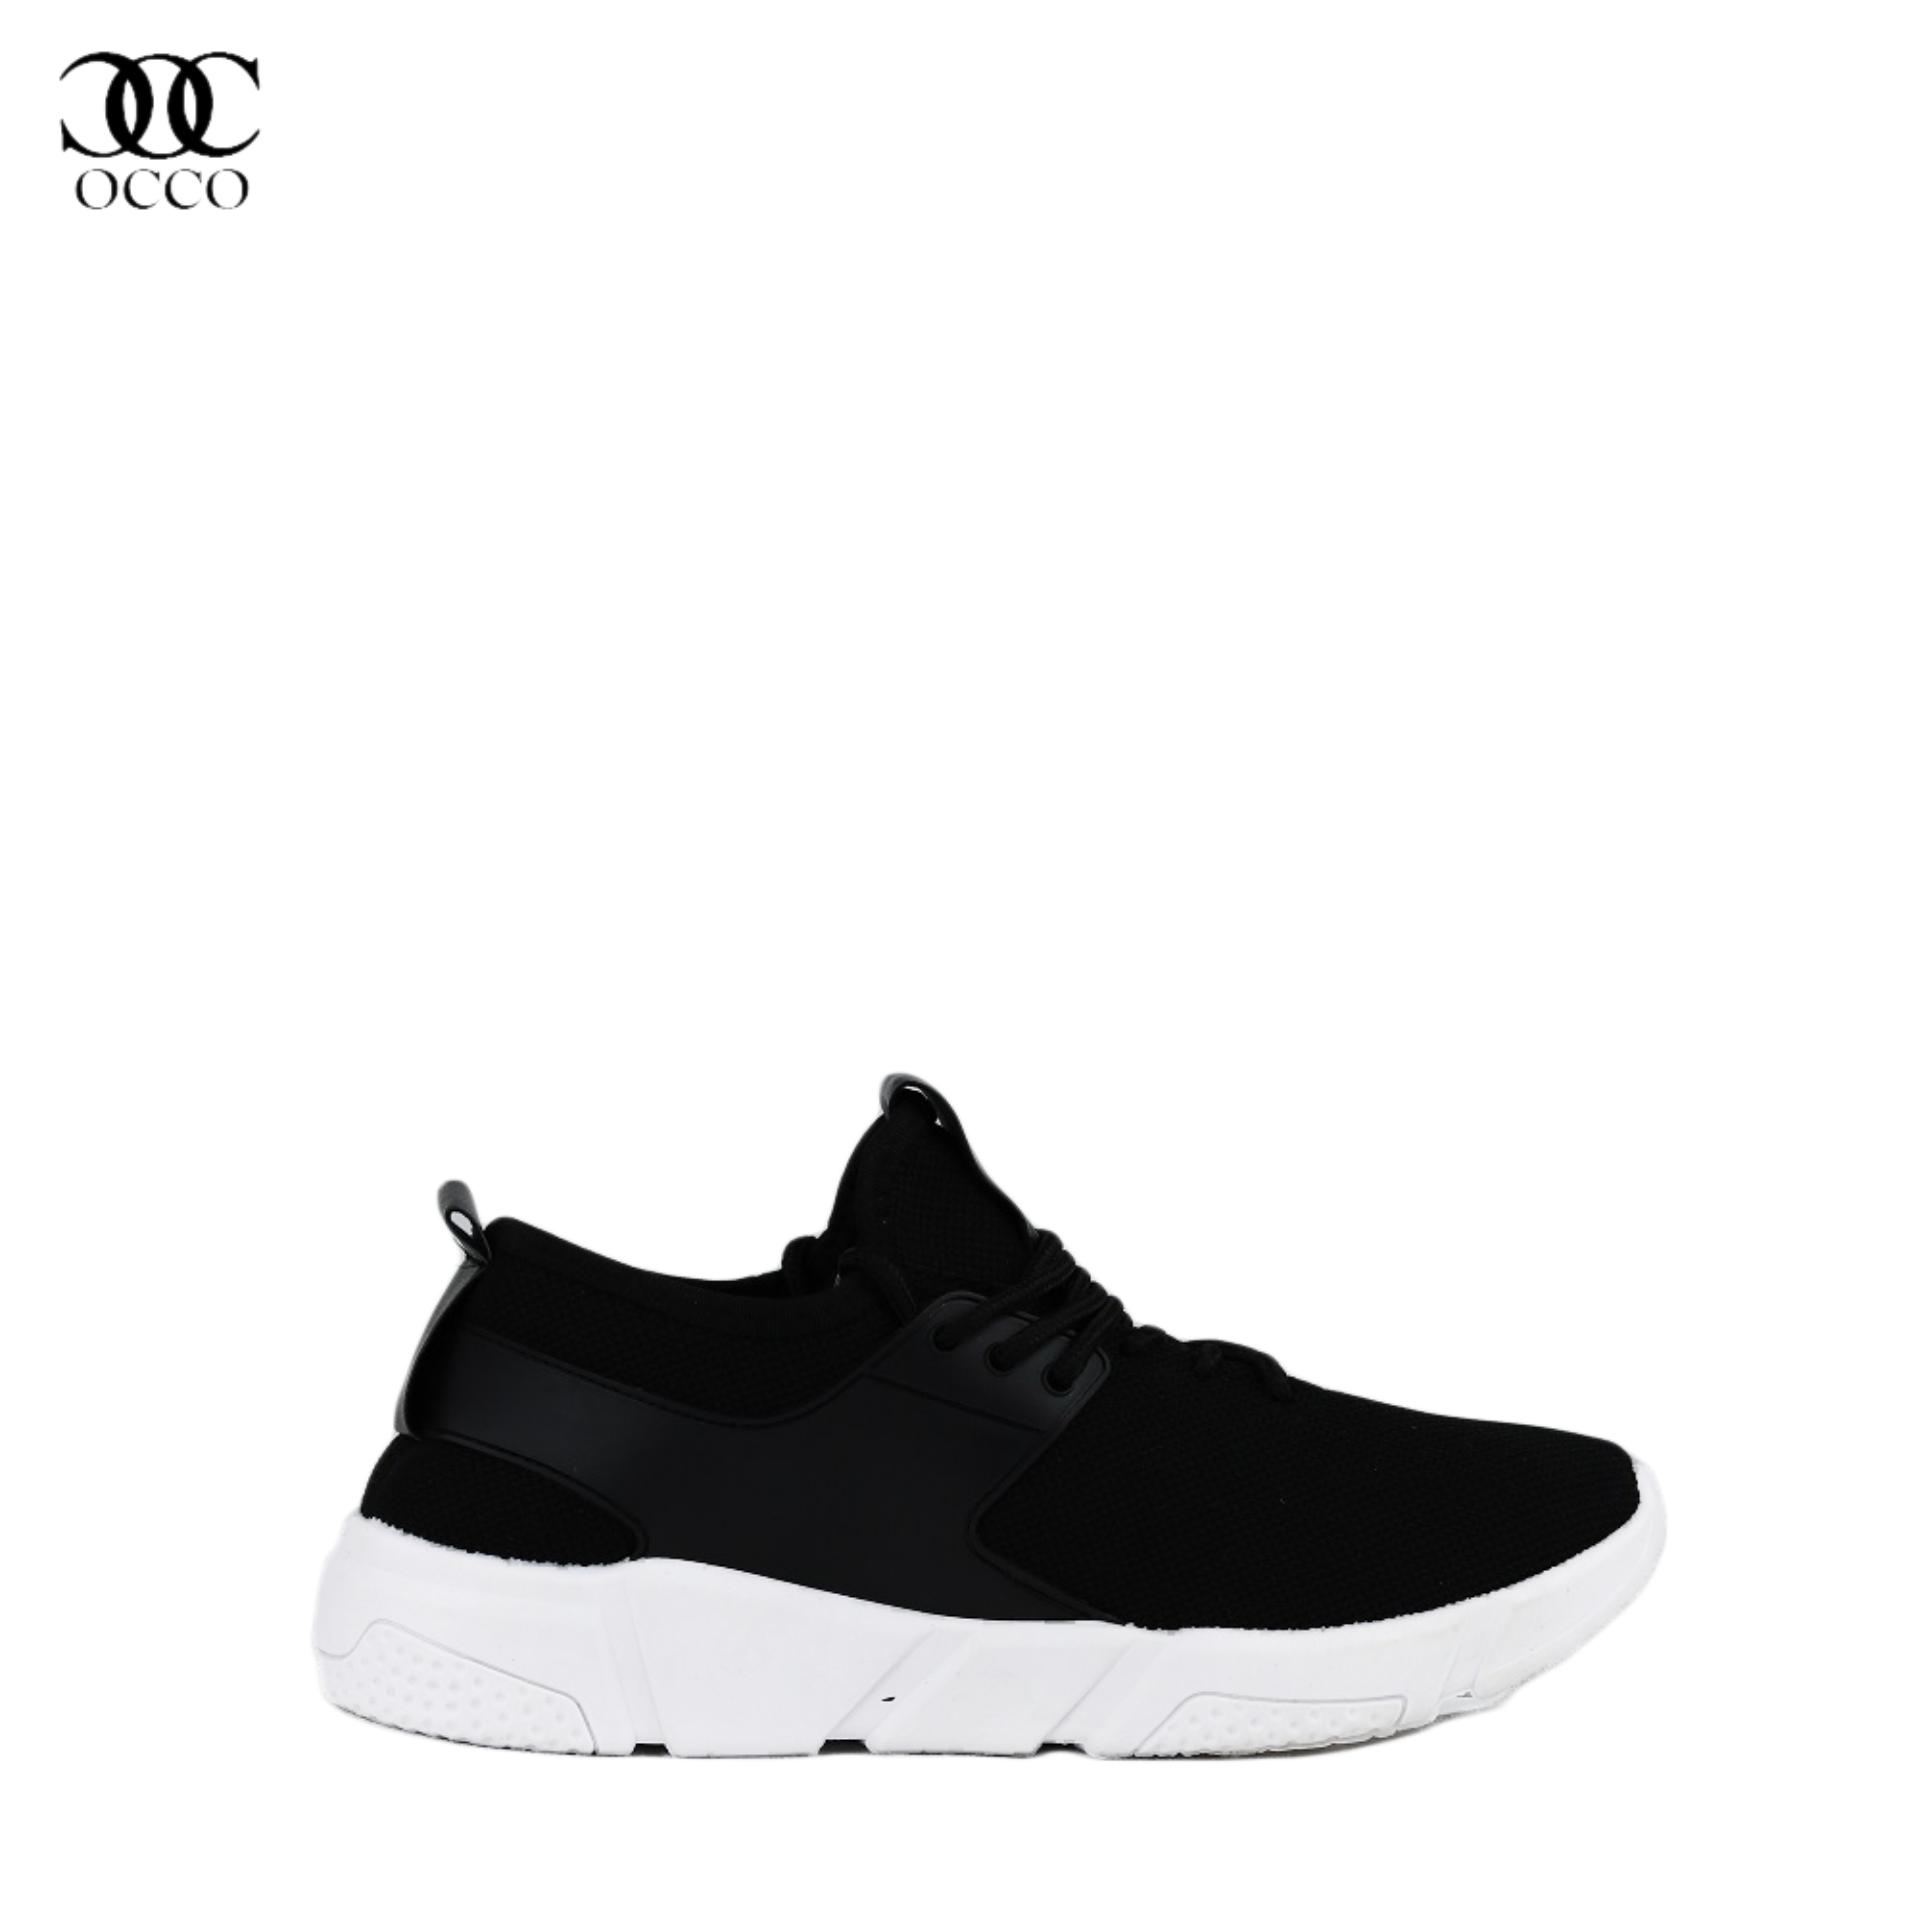 Giày thể thao sneakers nam nhập khẩu OCCO GNNEW01 (Đen)